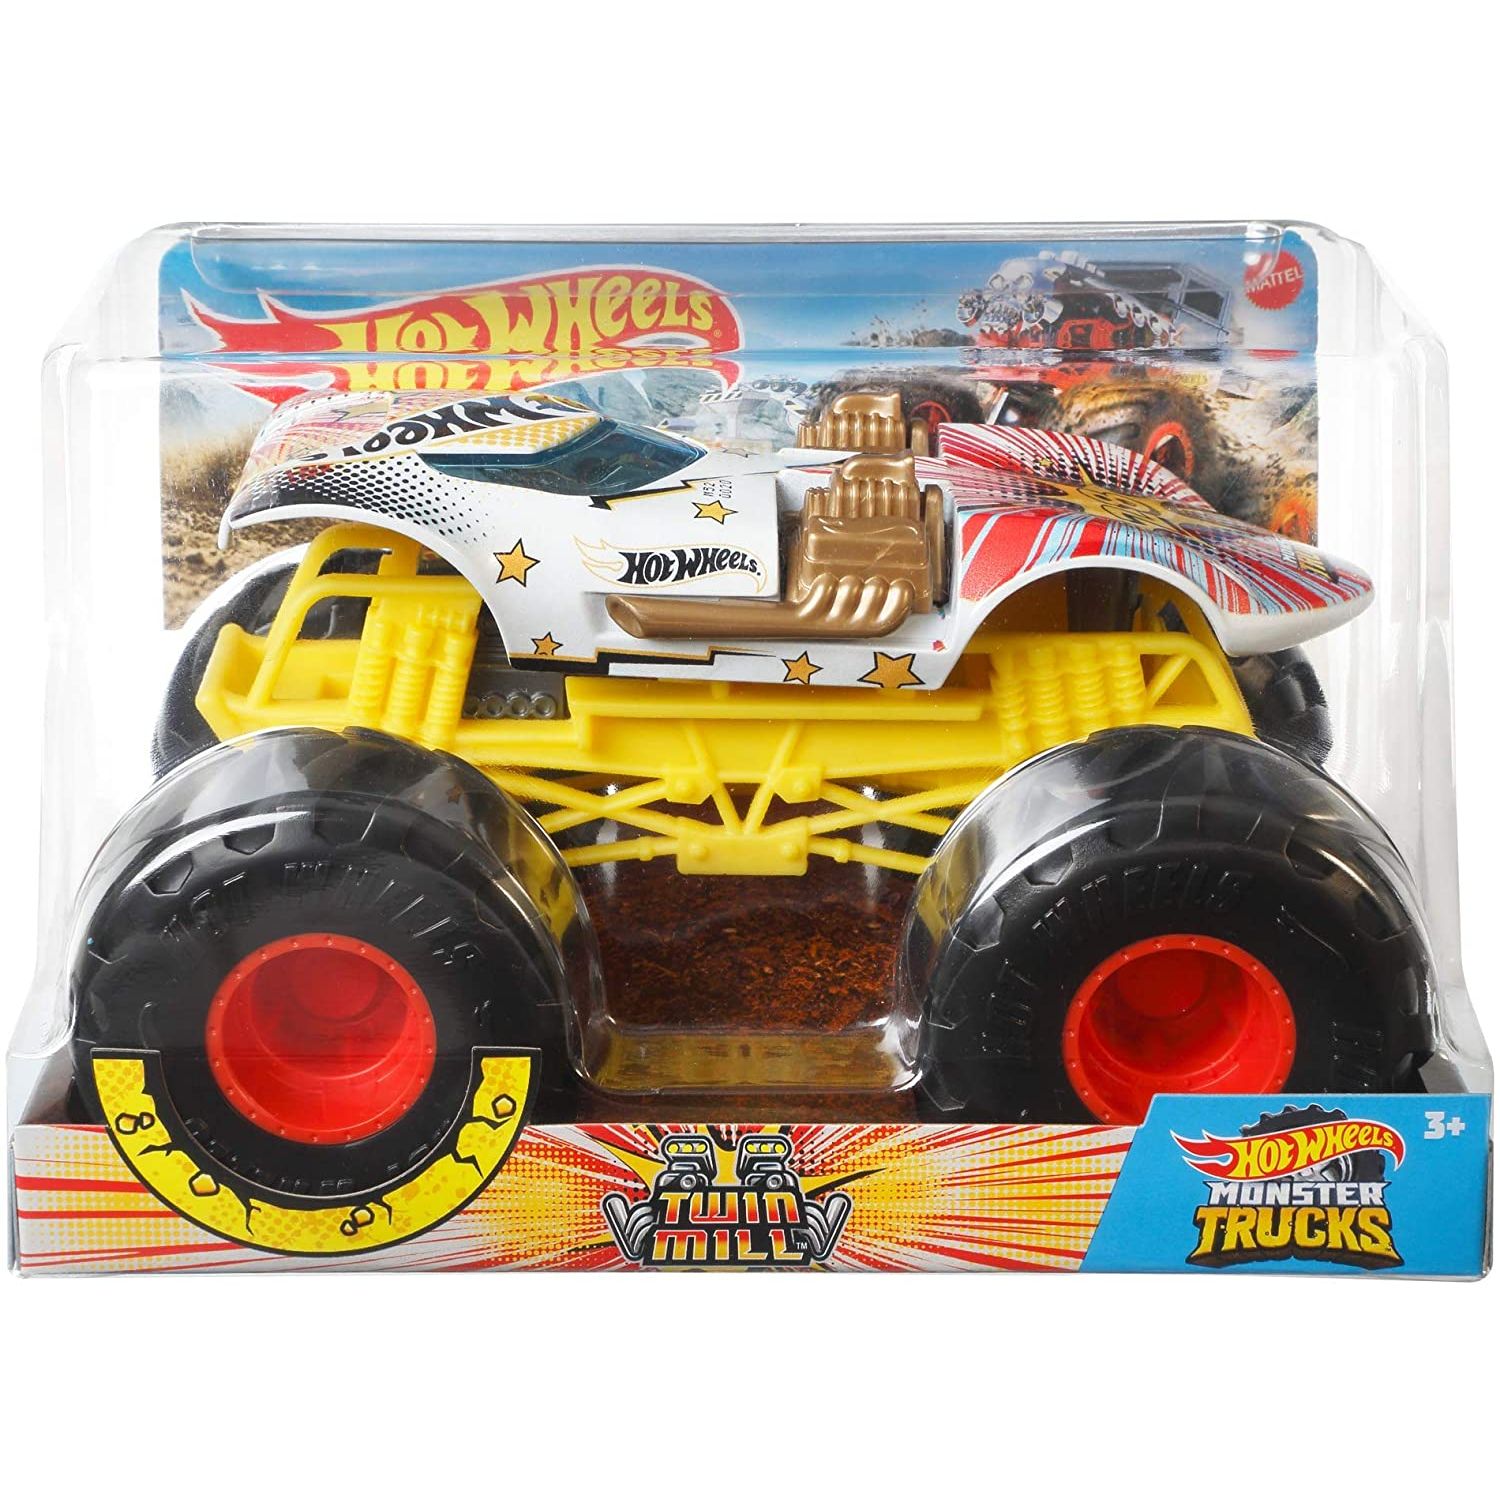 Preços baixos em Amarelo brinquedo e de metal fundido Monster Trucks